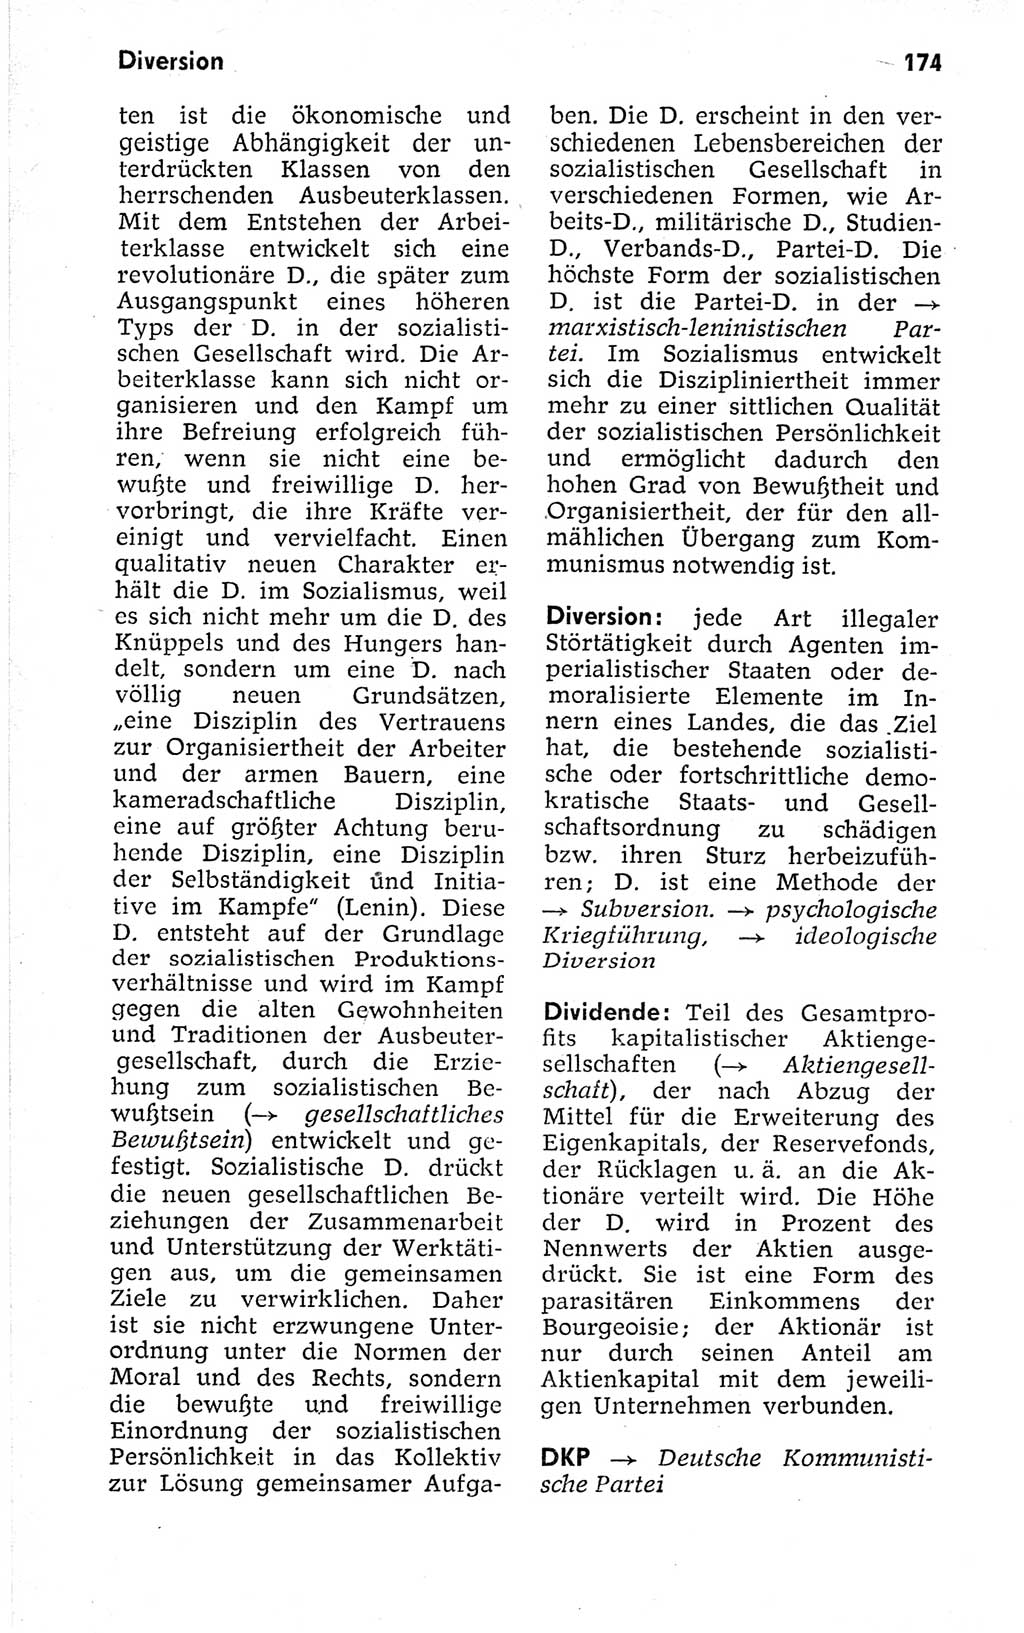 Kleines politisches Wörterbuch [Deutsche Demokratische Republik (DDR)] 1973, Seite 174 (Kl. pol. Wb. DDR 1973, S. 174)